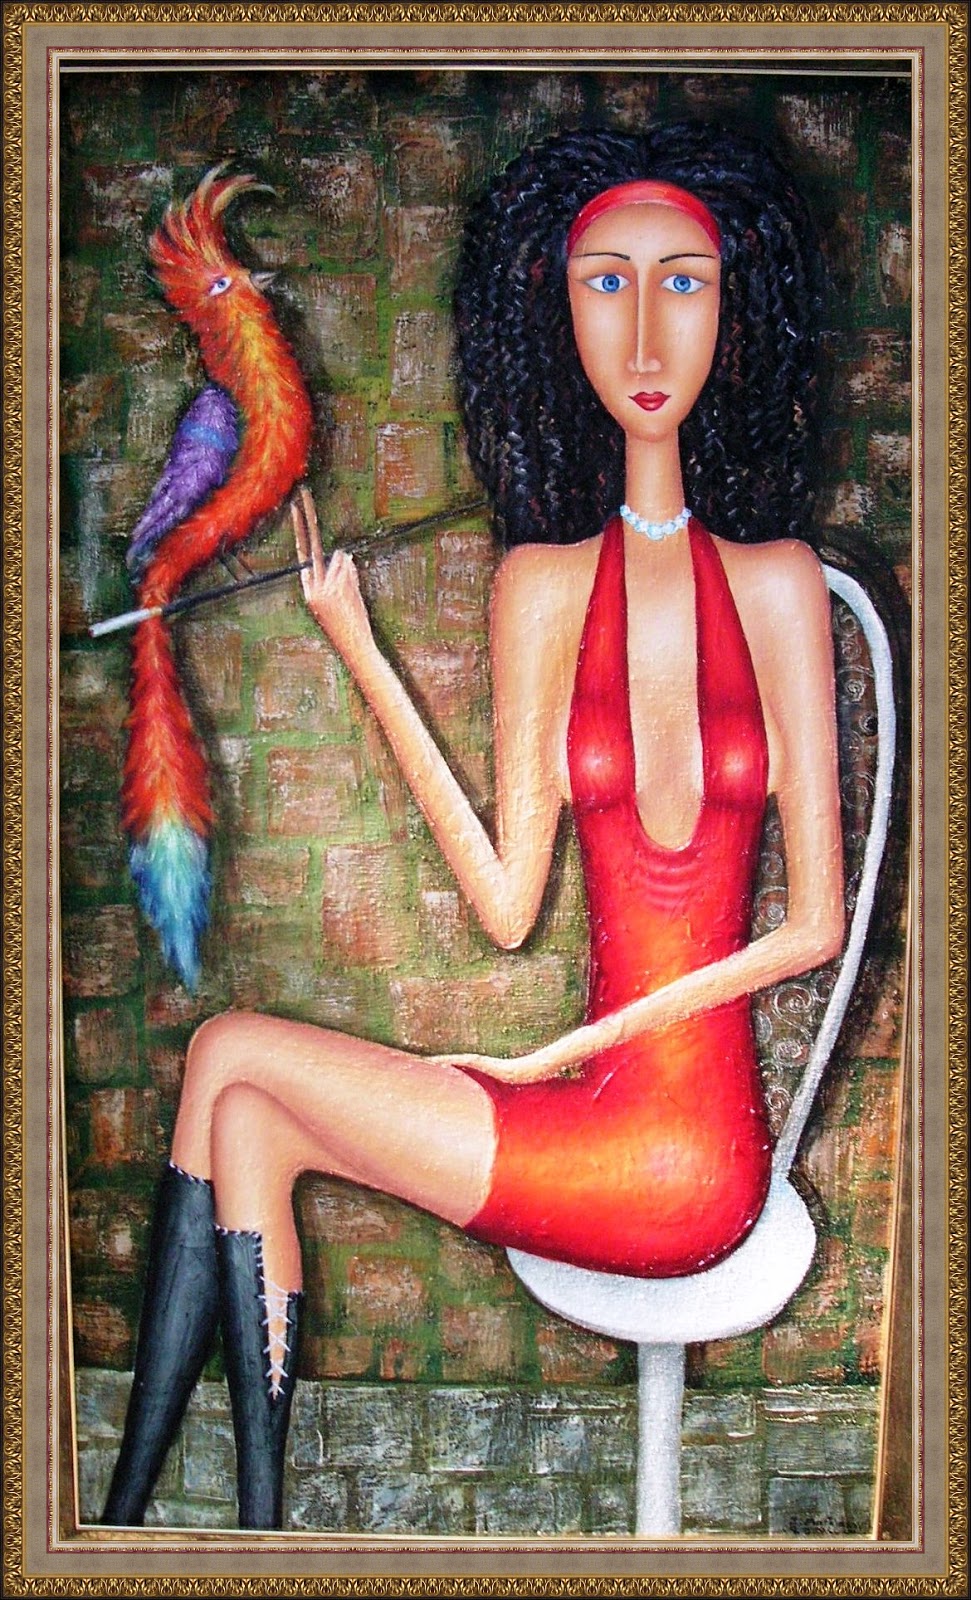 Гала, 2008. Зураб Мартиашвили (Zurab Martiashvili) - современный грузинский художник. Современная живопись. Грузия, картины